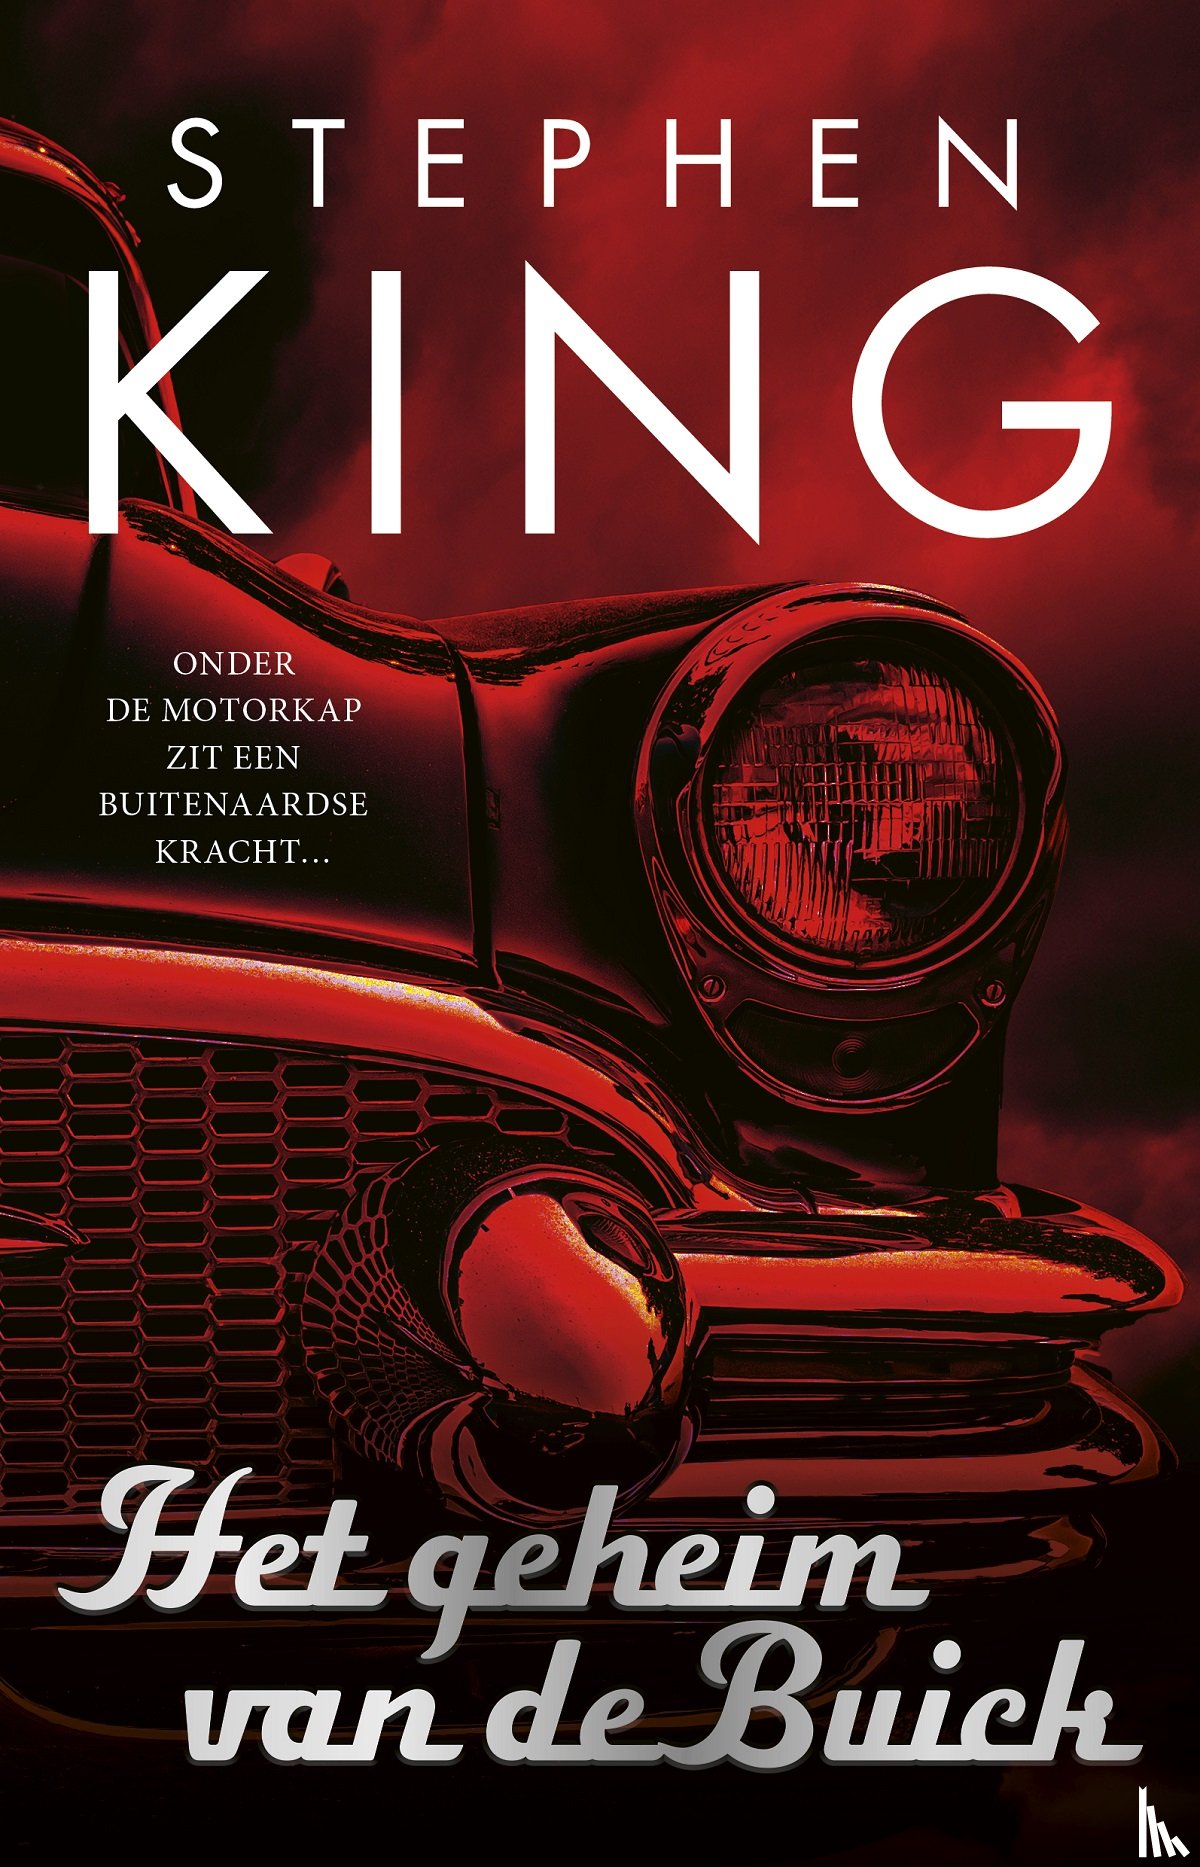 King, Stephen - Het geheim van de Buick